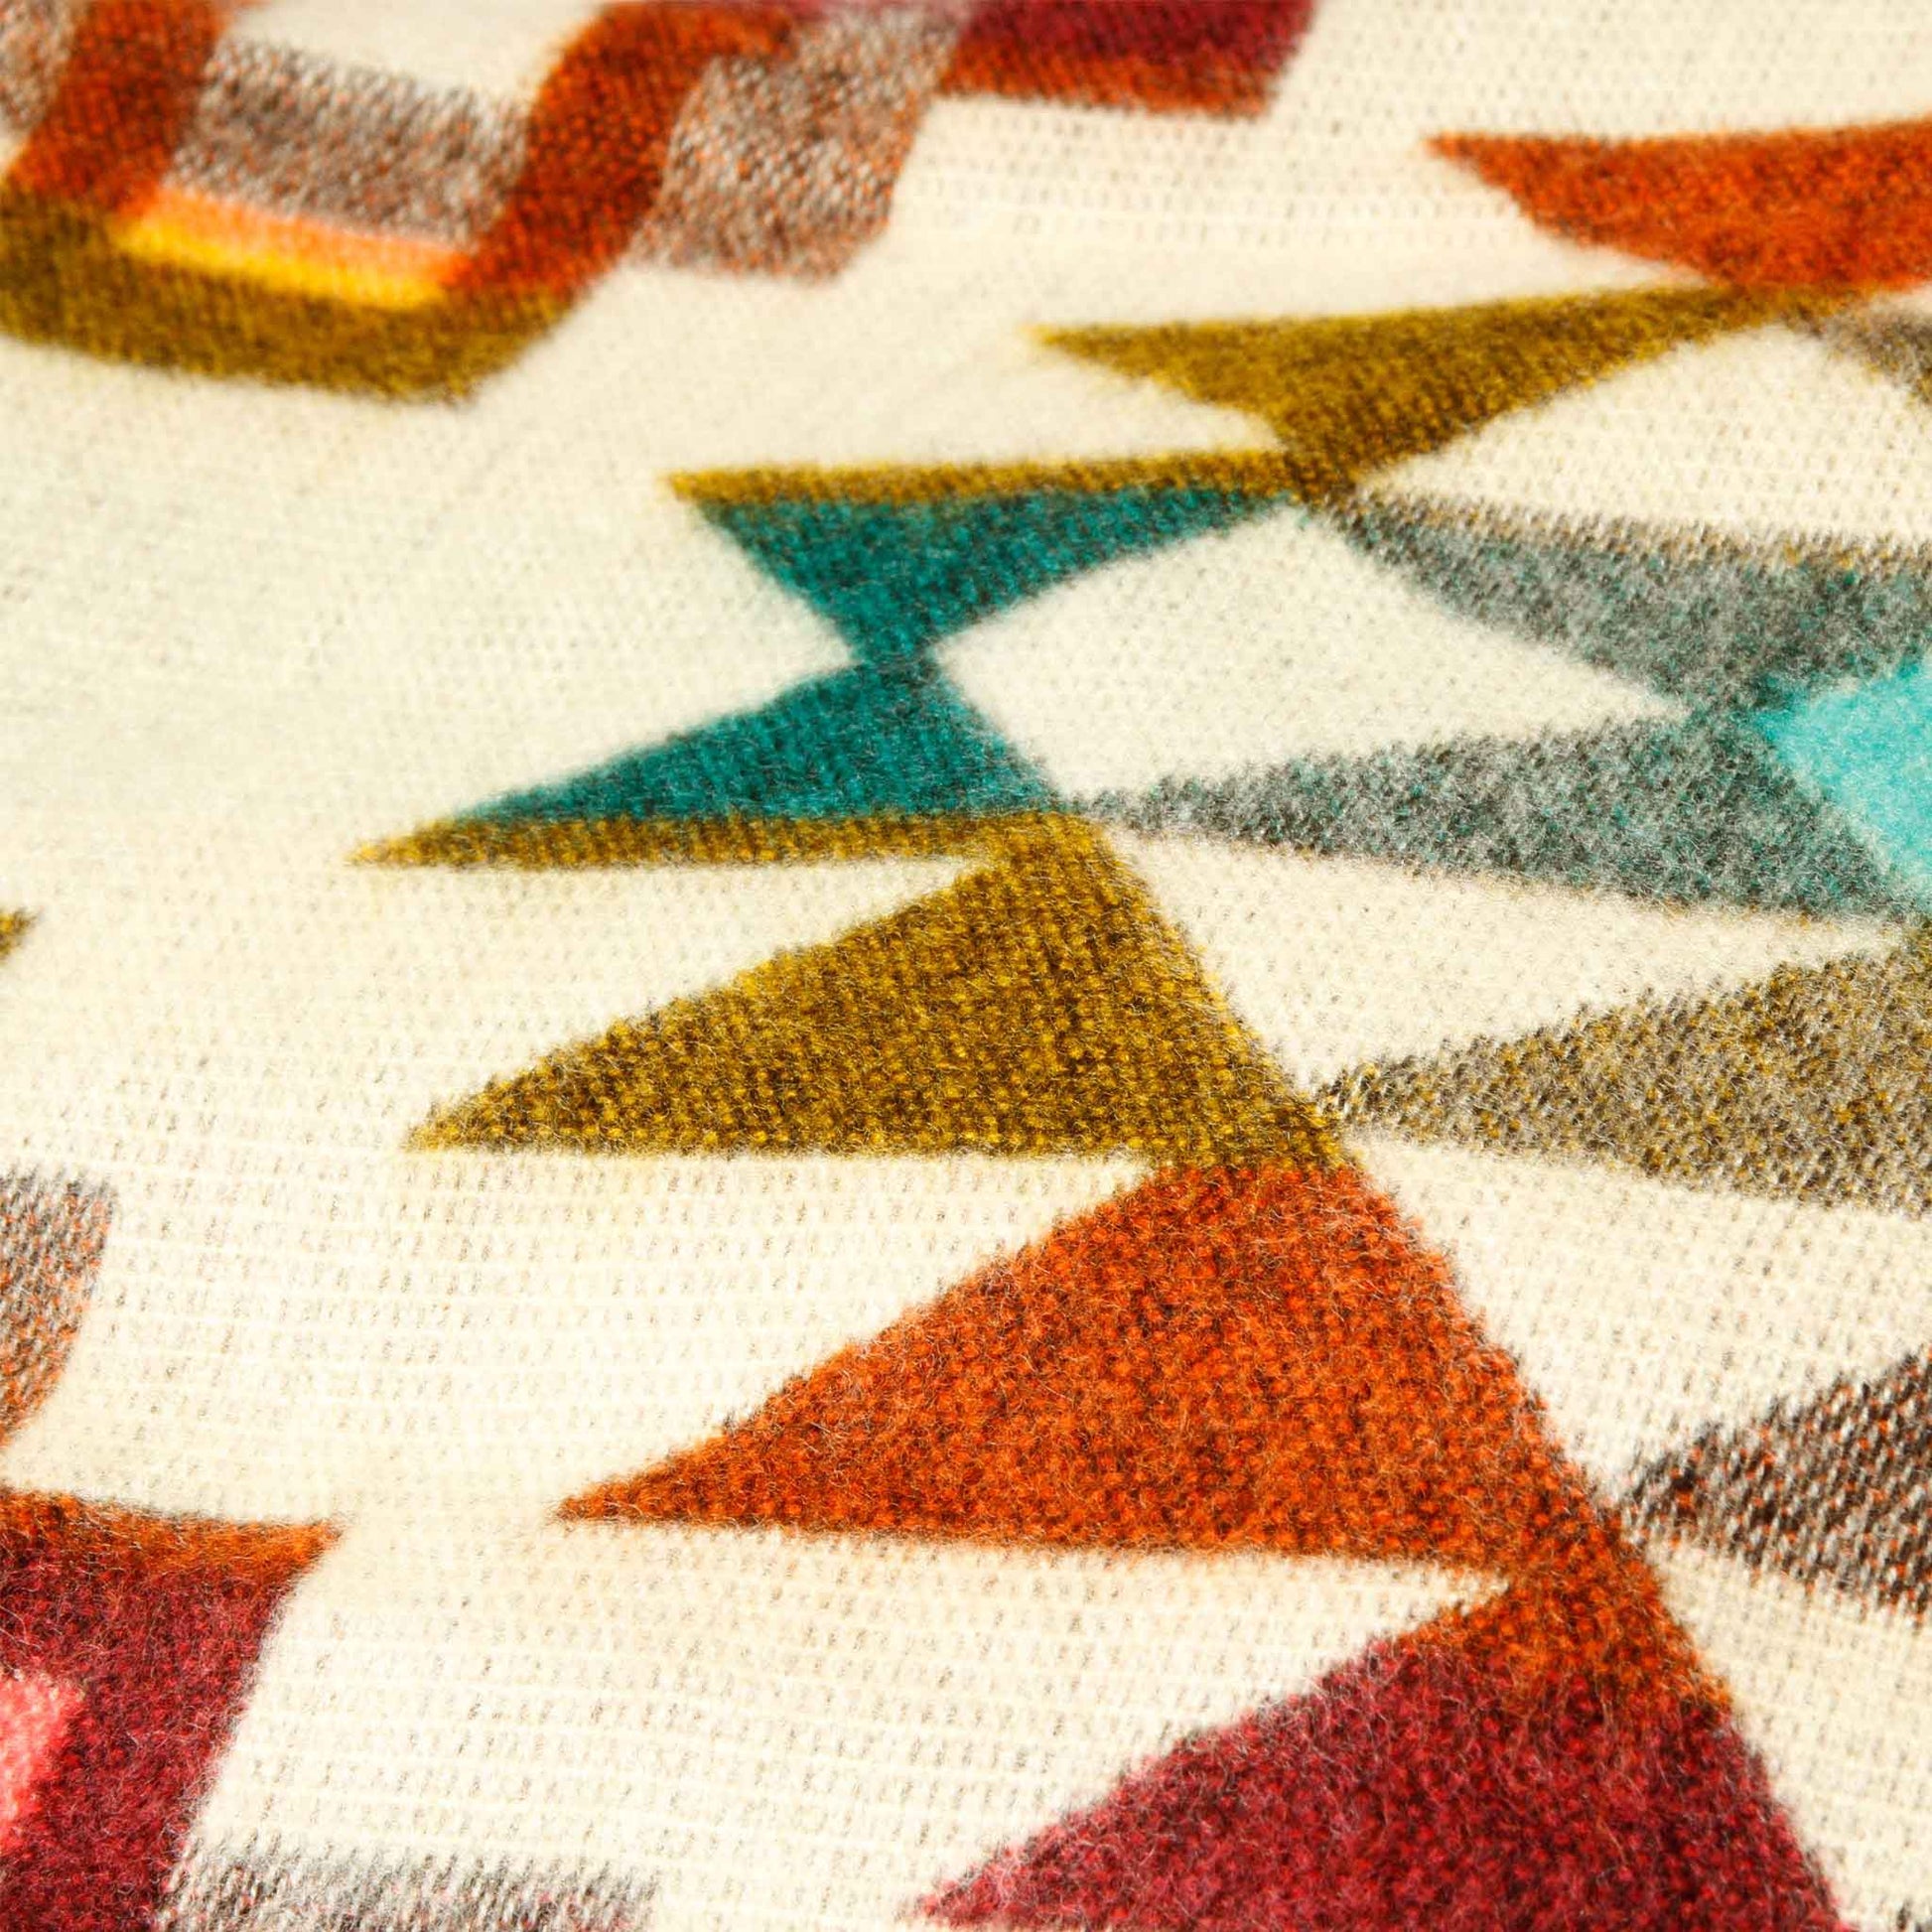 Authentische Chimborazo Decke aus Alpaka Wolle - 195 x 235 cm - Pinker Mix - Vandeley